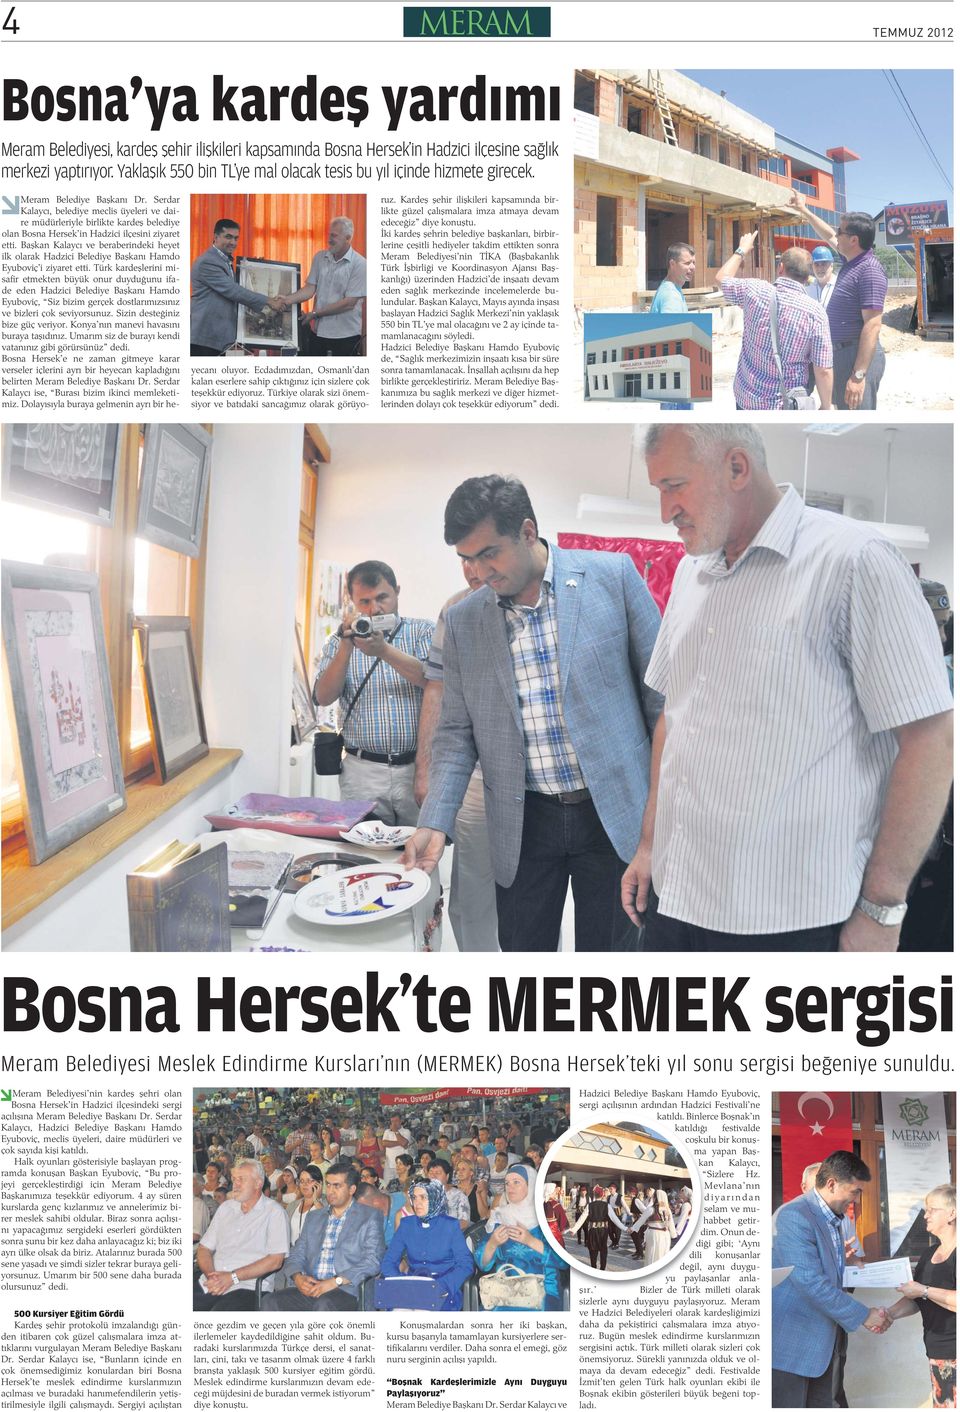 Serdar Kalaycı, belediye meclis üyeleri ve daire müdürleriyle birlikte karde belediye olan Bosna Hersek in Hadzici ilçesini ziyaret etti.